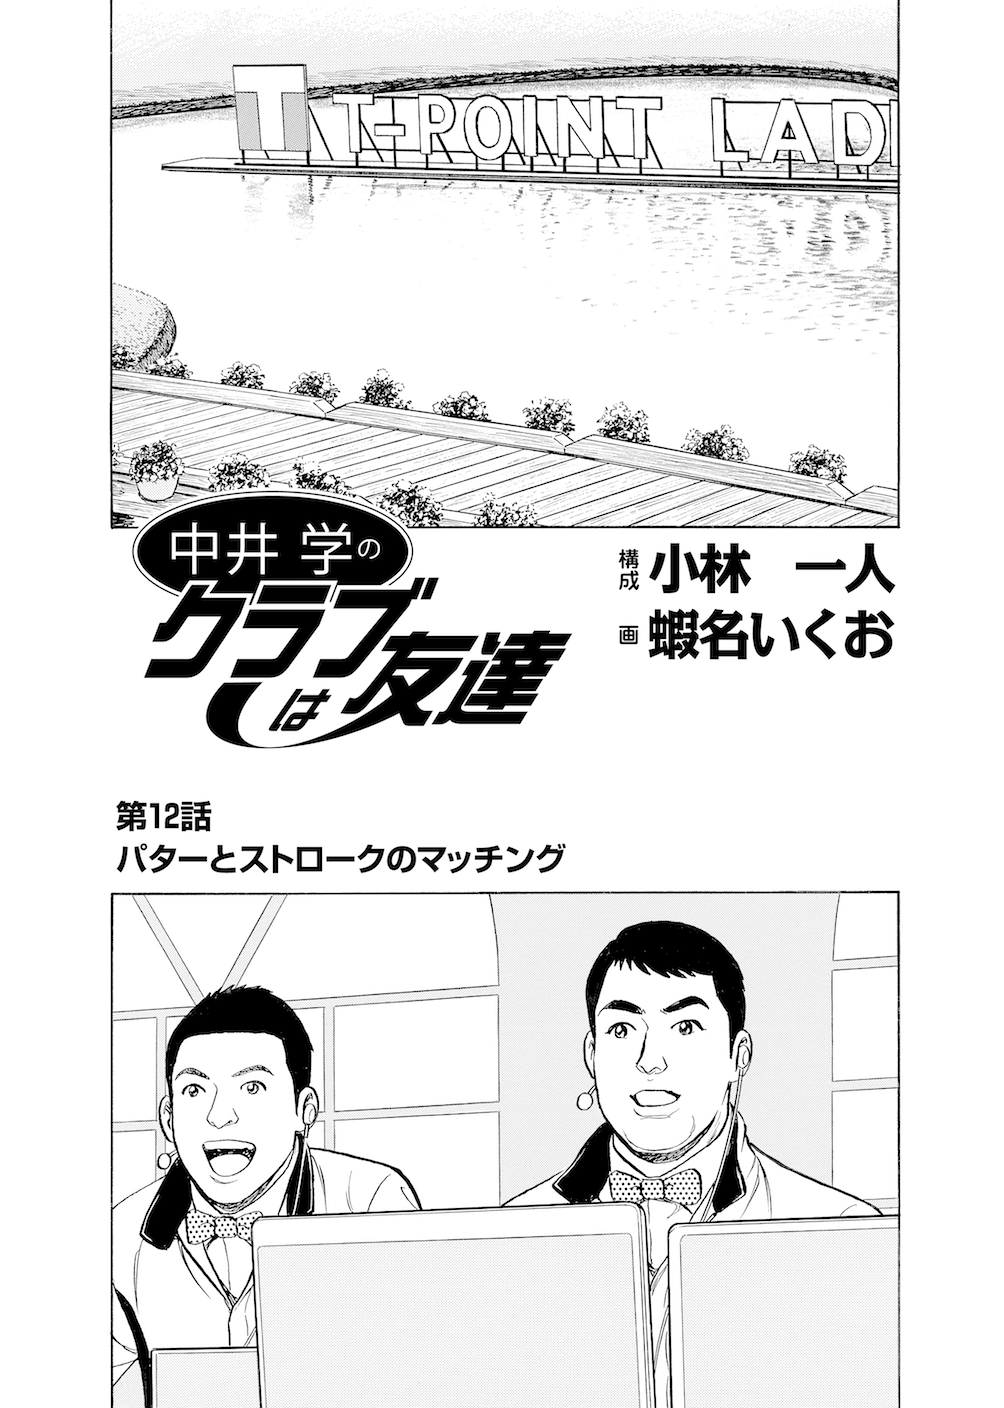 第12話 「パターとストロークのマッチング」 - 無料で読めるゴルフレッスンコミックWEB | 日本文芸社